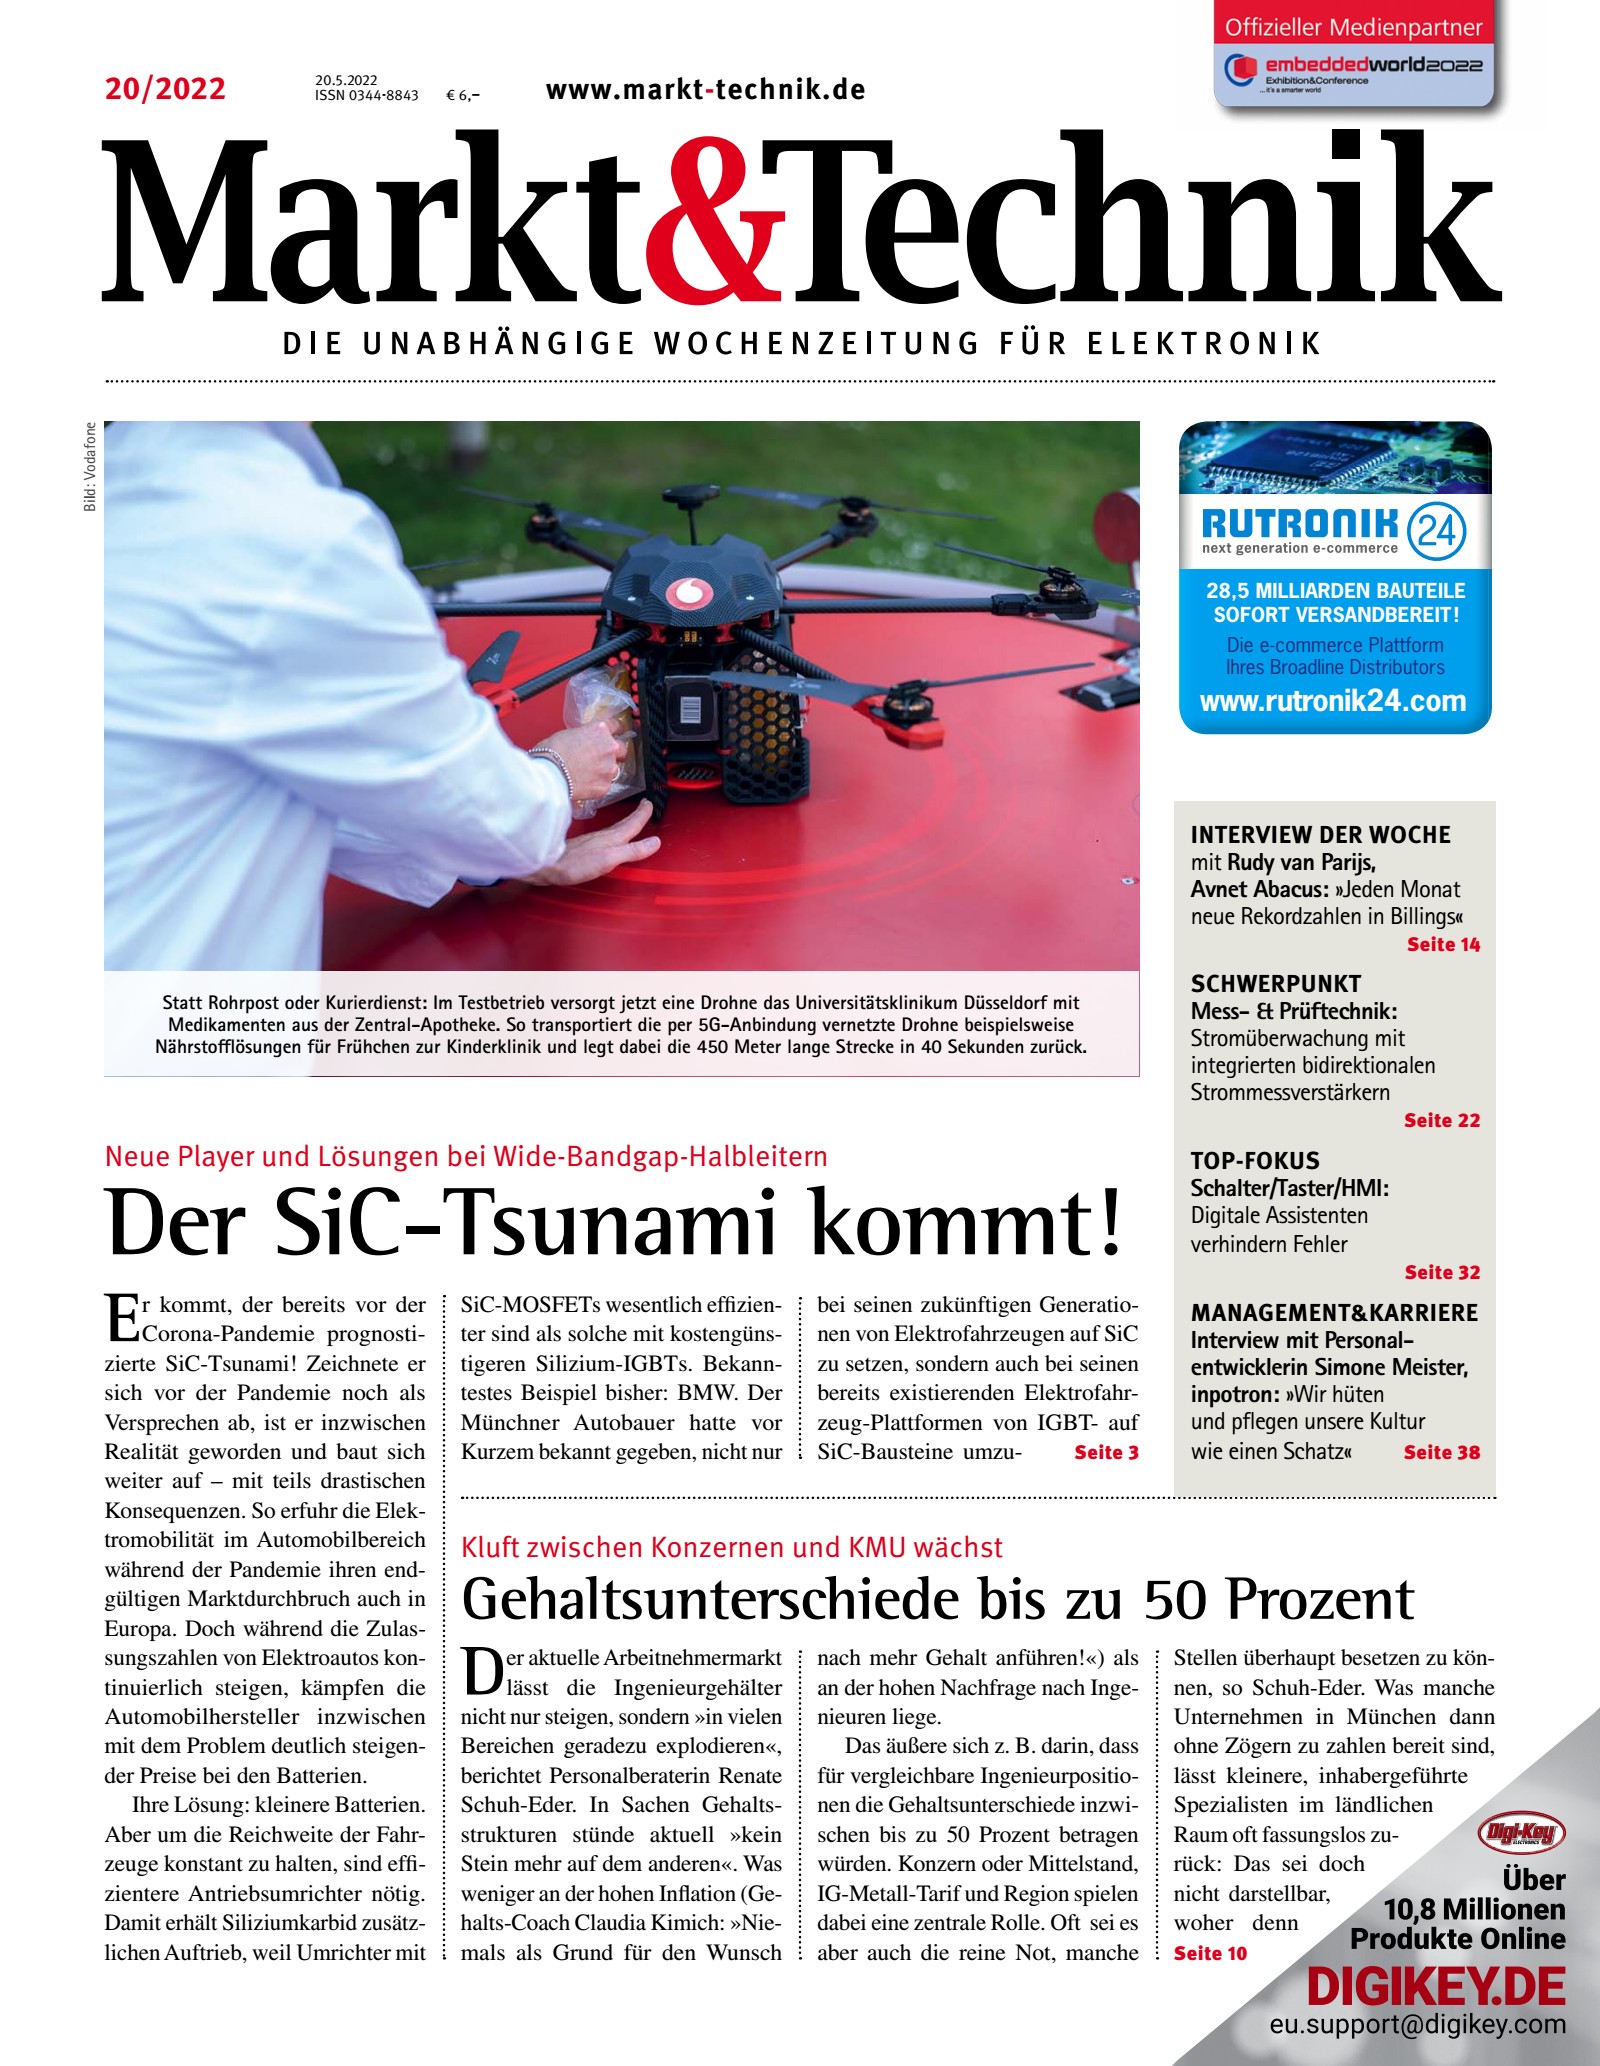 Markt&Technik 20/2022 Digital